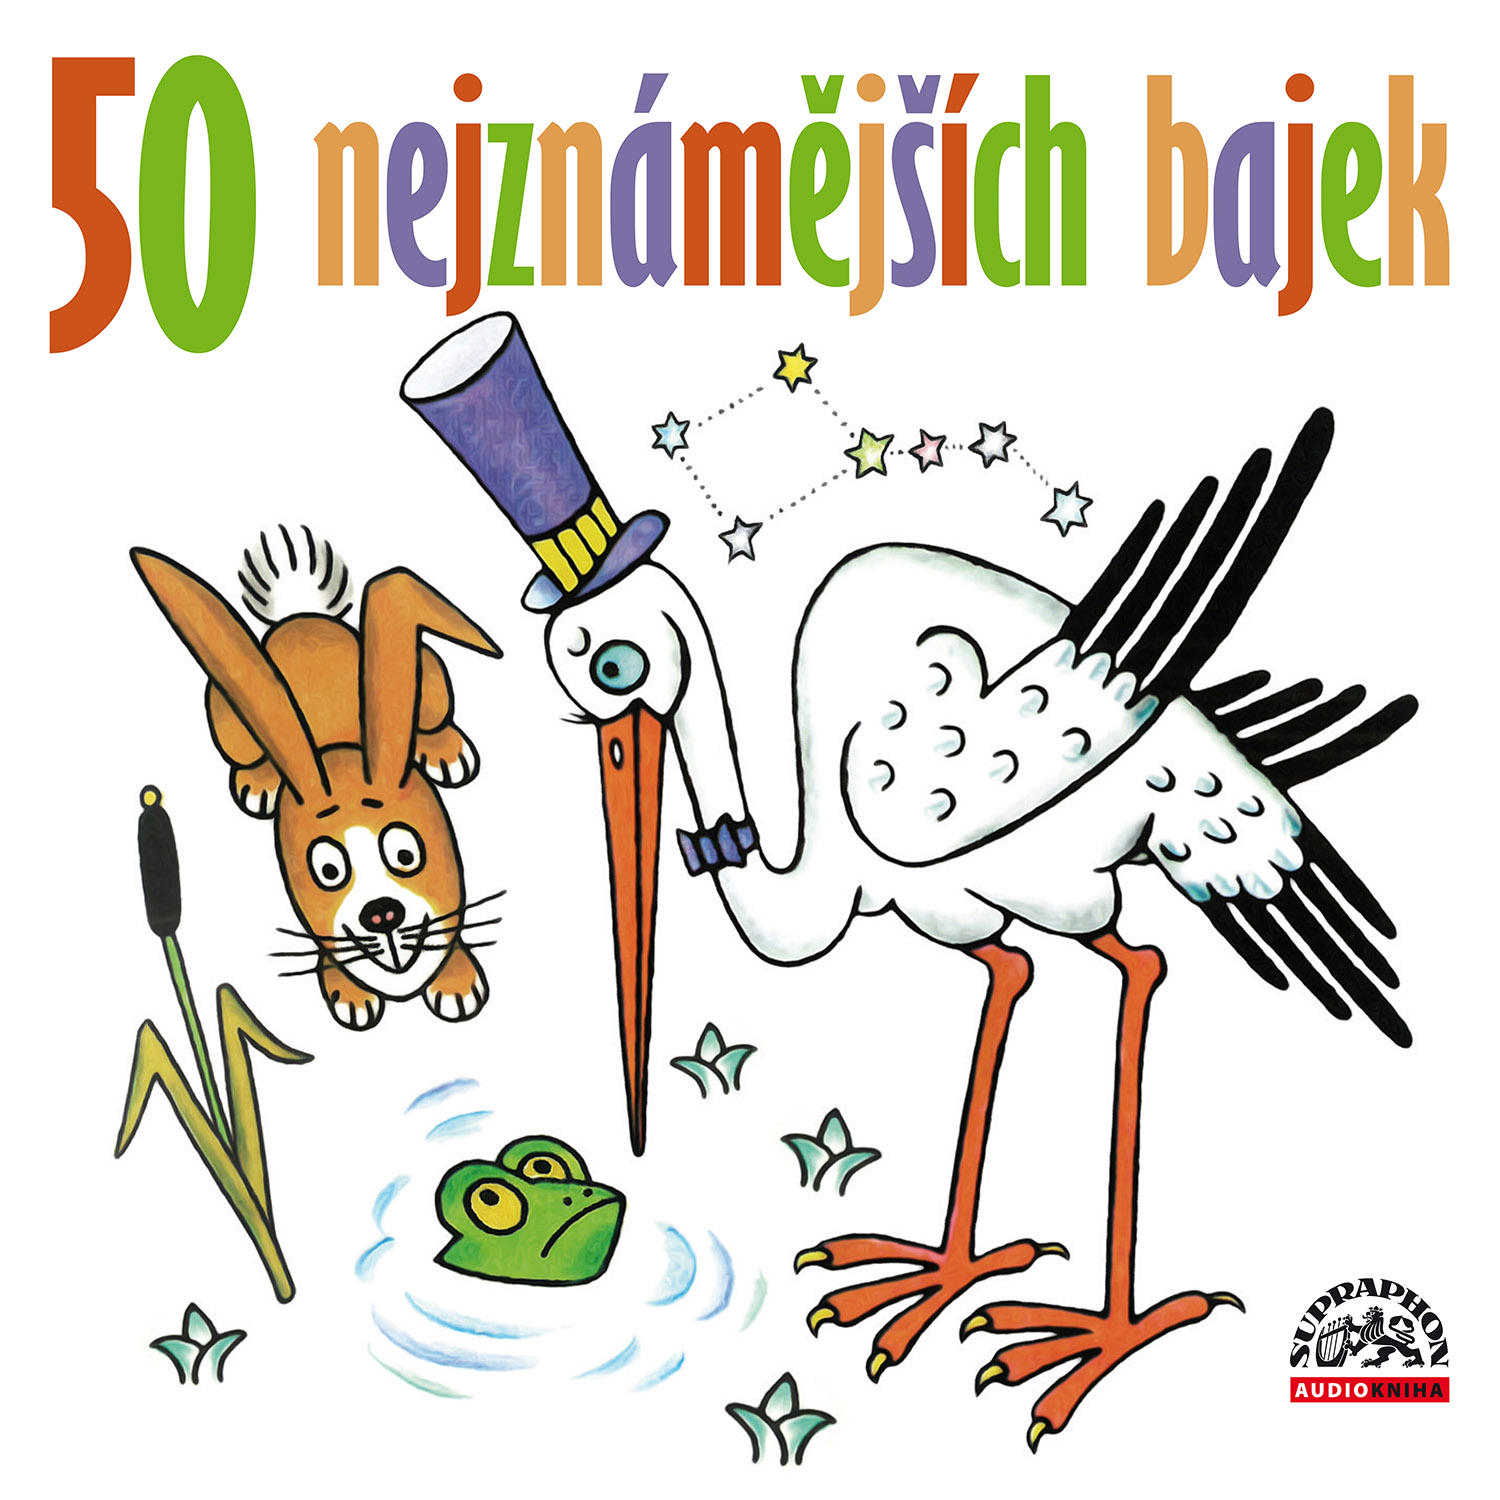 CD Shop - ZEDNICEK PAVEL, POSTLEROVA SIM 50 NEJZNAMEJSICH BAJEK (MP3-CD)